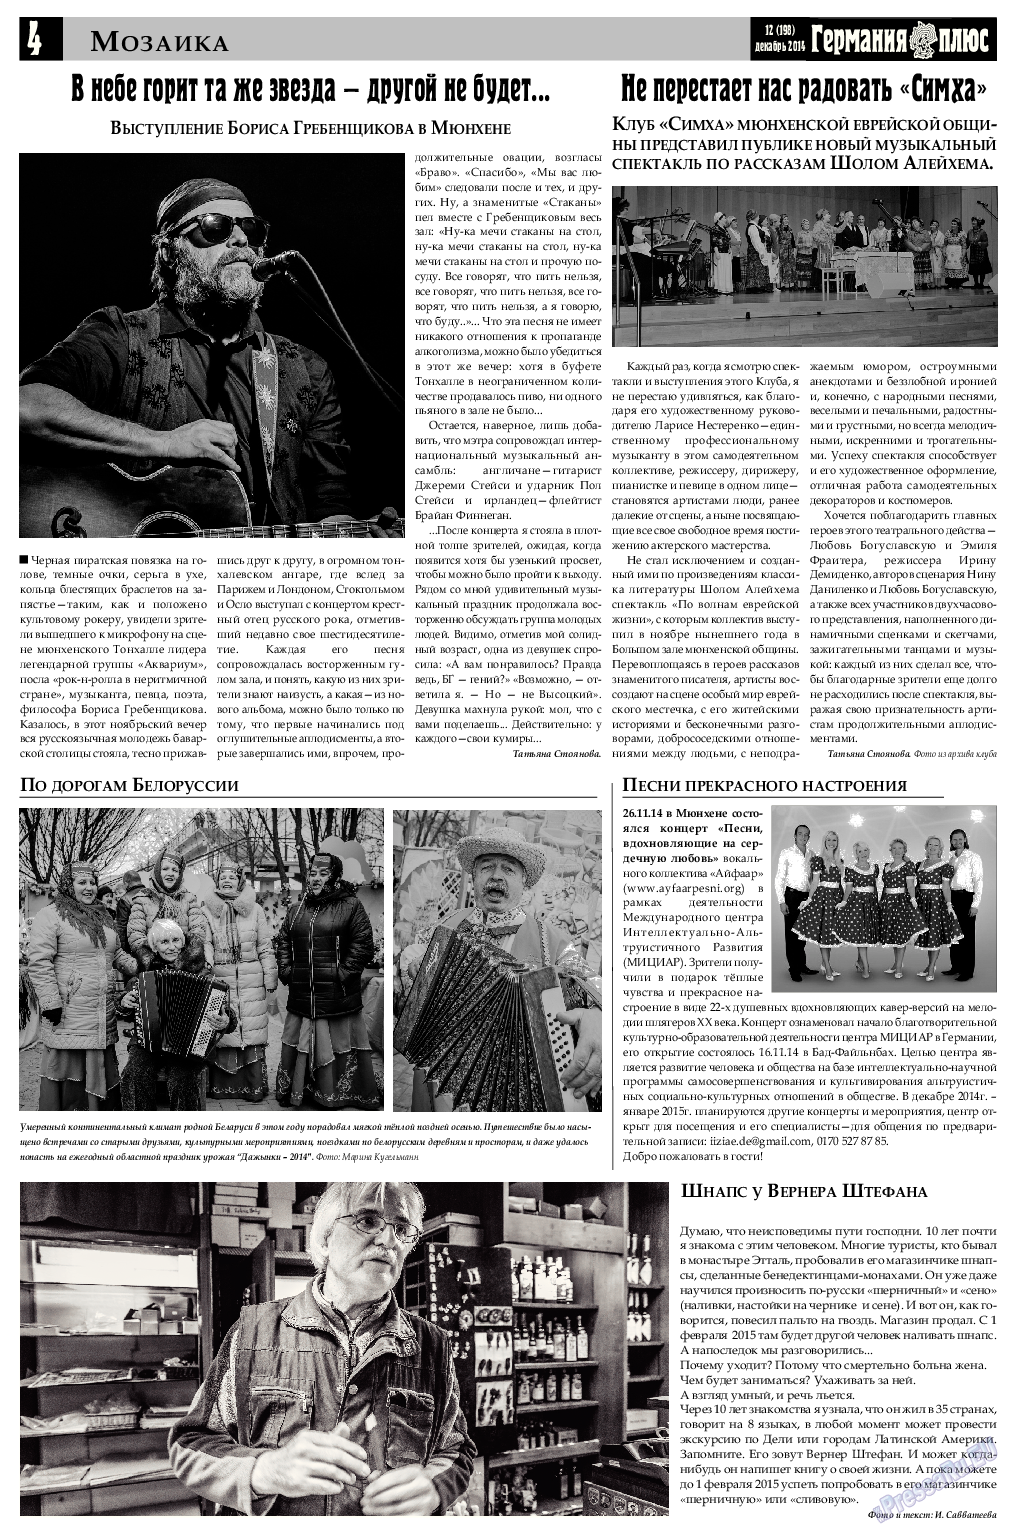 Германия плюс, газета. 2014 №12 стр.4